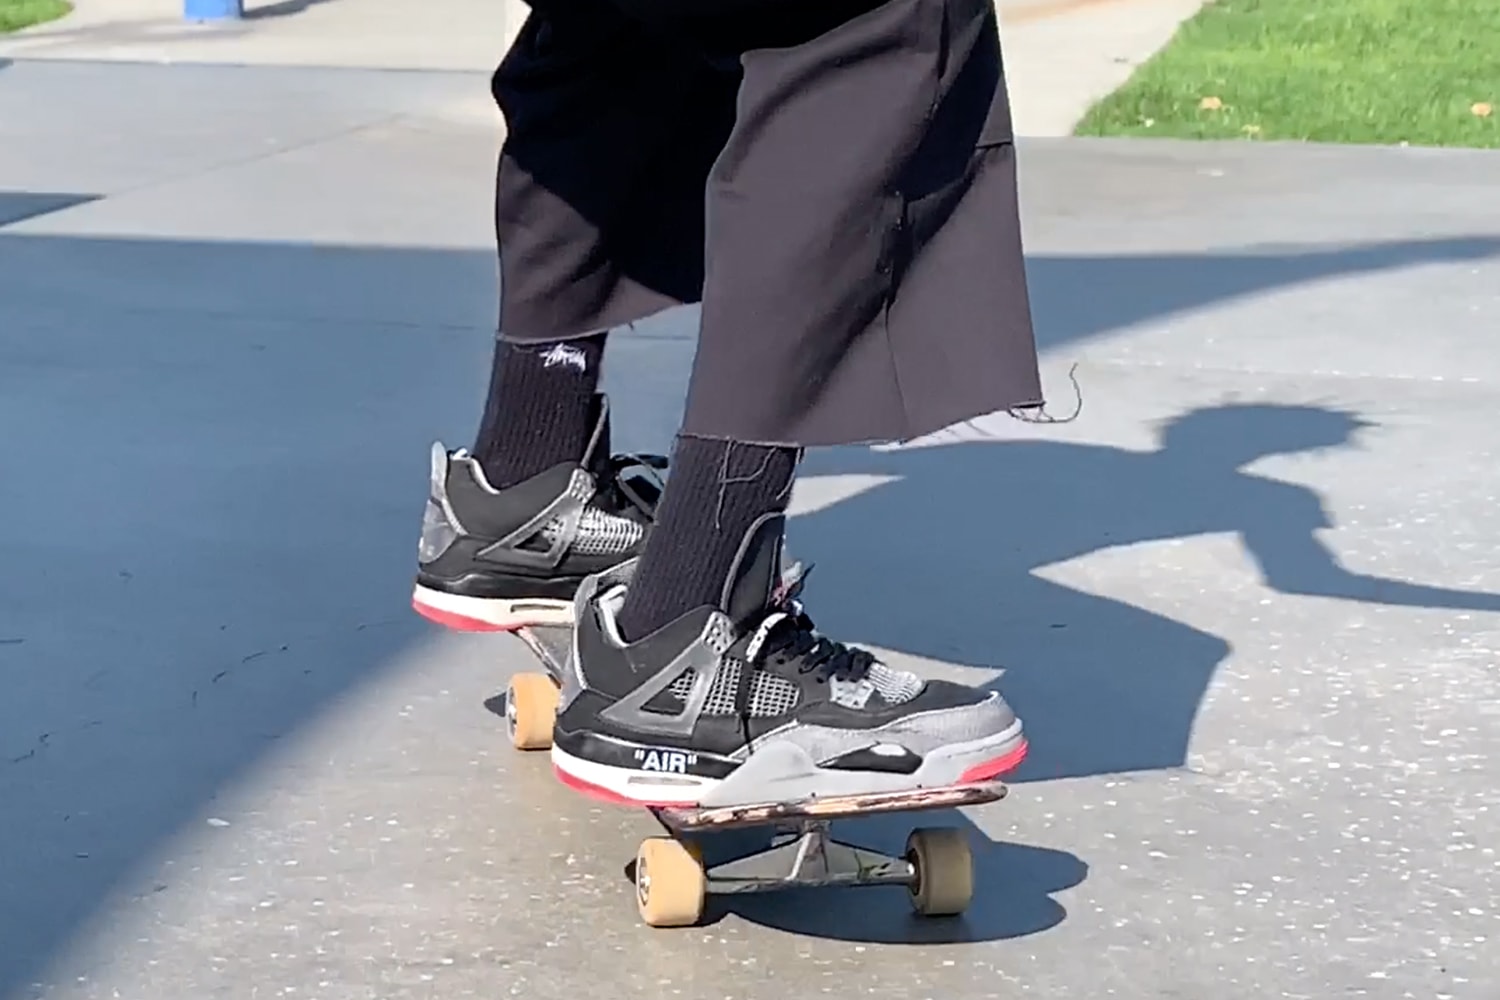 未発売のオフホワイト x エアジョーダン4を着用するスケート動画が公開 Burberry.Erry Erik Arteaga Skates Unreleased Off White Air Jordan 4 Bred Video